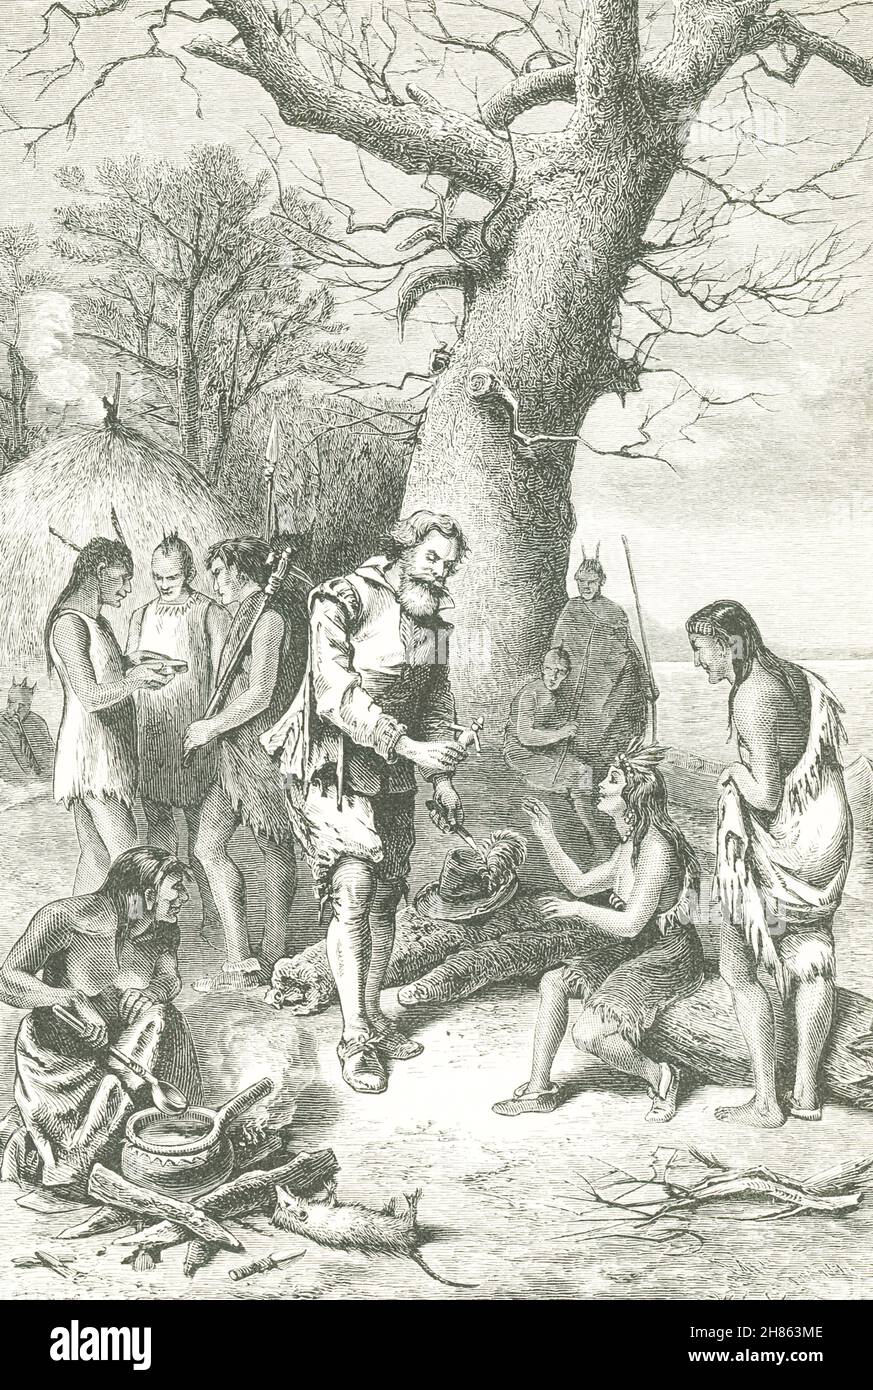 La légende de cette illustration de 1890 se lit comme suit : le capitaine Smith amuses Pocahontas avec des jouets.Le capitaine anglais John Smith a guidé les colons à travers les temps difficiles dans la colonie de Jamestown en 1607.La tradition (non authentifiée) dit que Pocahontas le sauve de la mort aux mains des Amérindiens.Pocahontas, c.De 1595 à 1617, était la fille du chef indien américain Powhatan. Banque D'Images